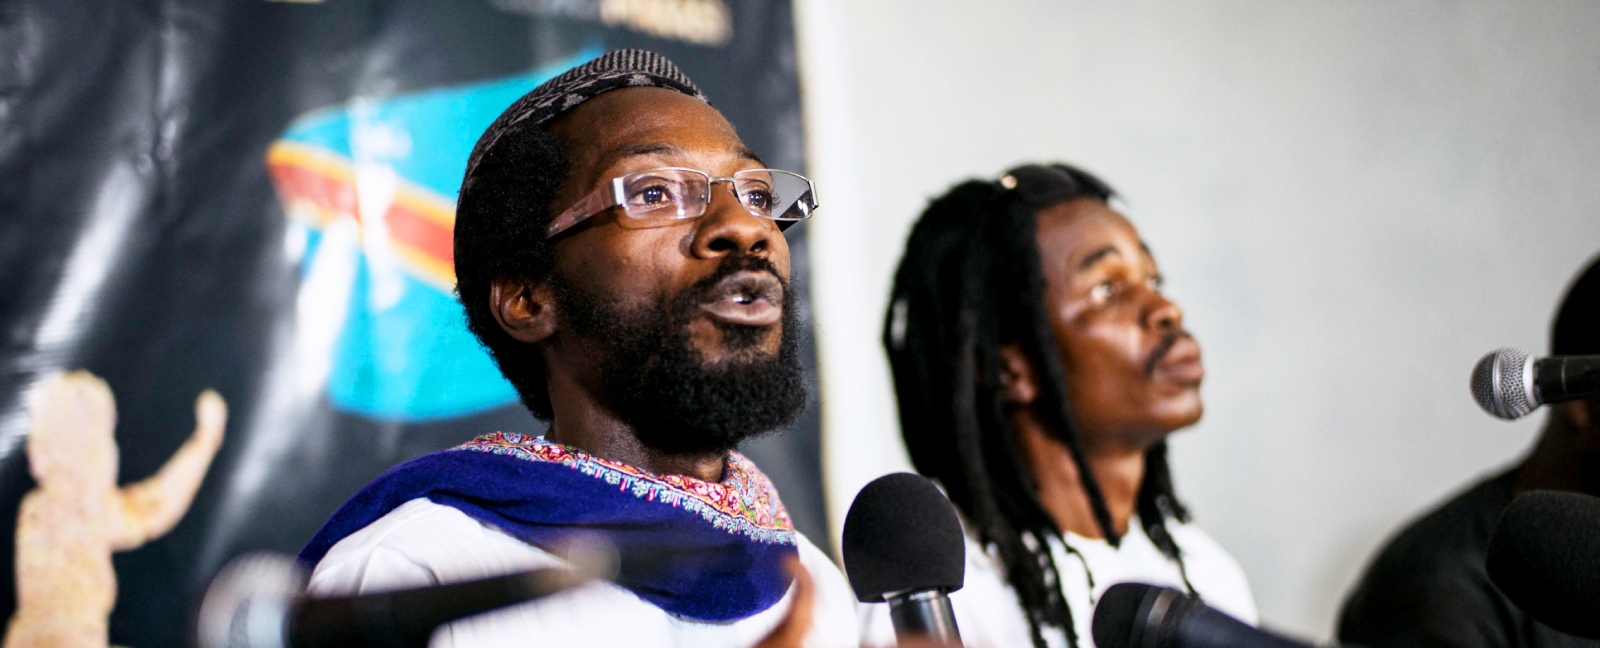 Fadel Barro of Senegal's Y'en a Marre movement at a press conference in Kinshasa